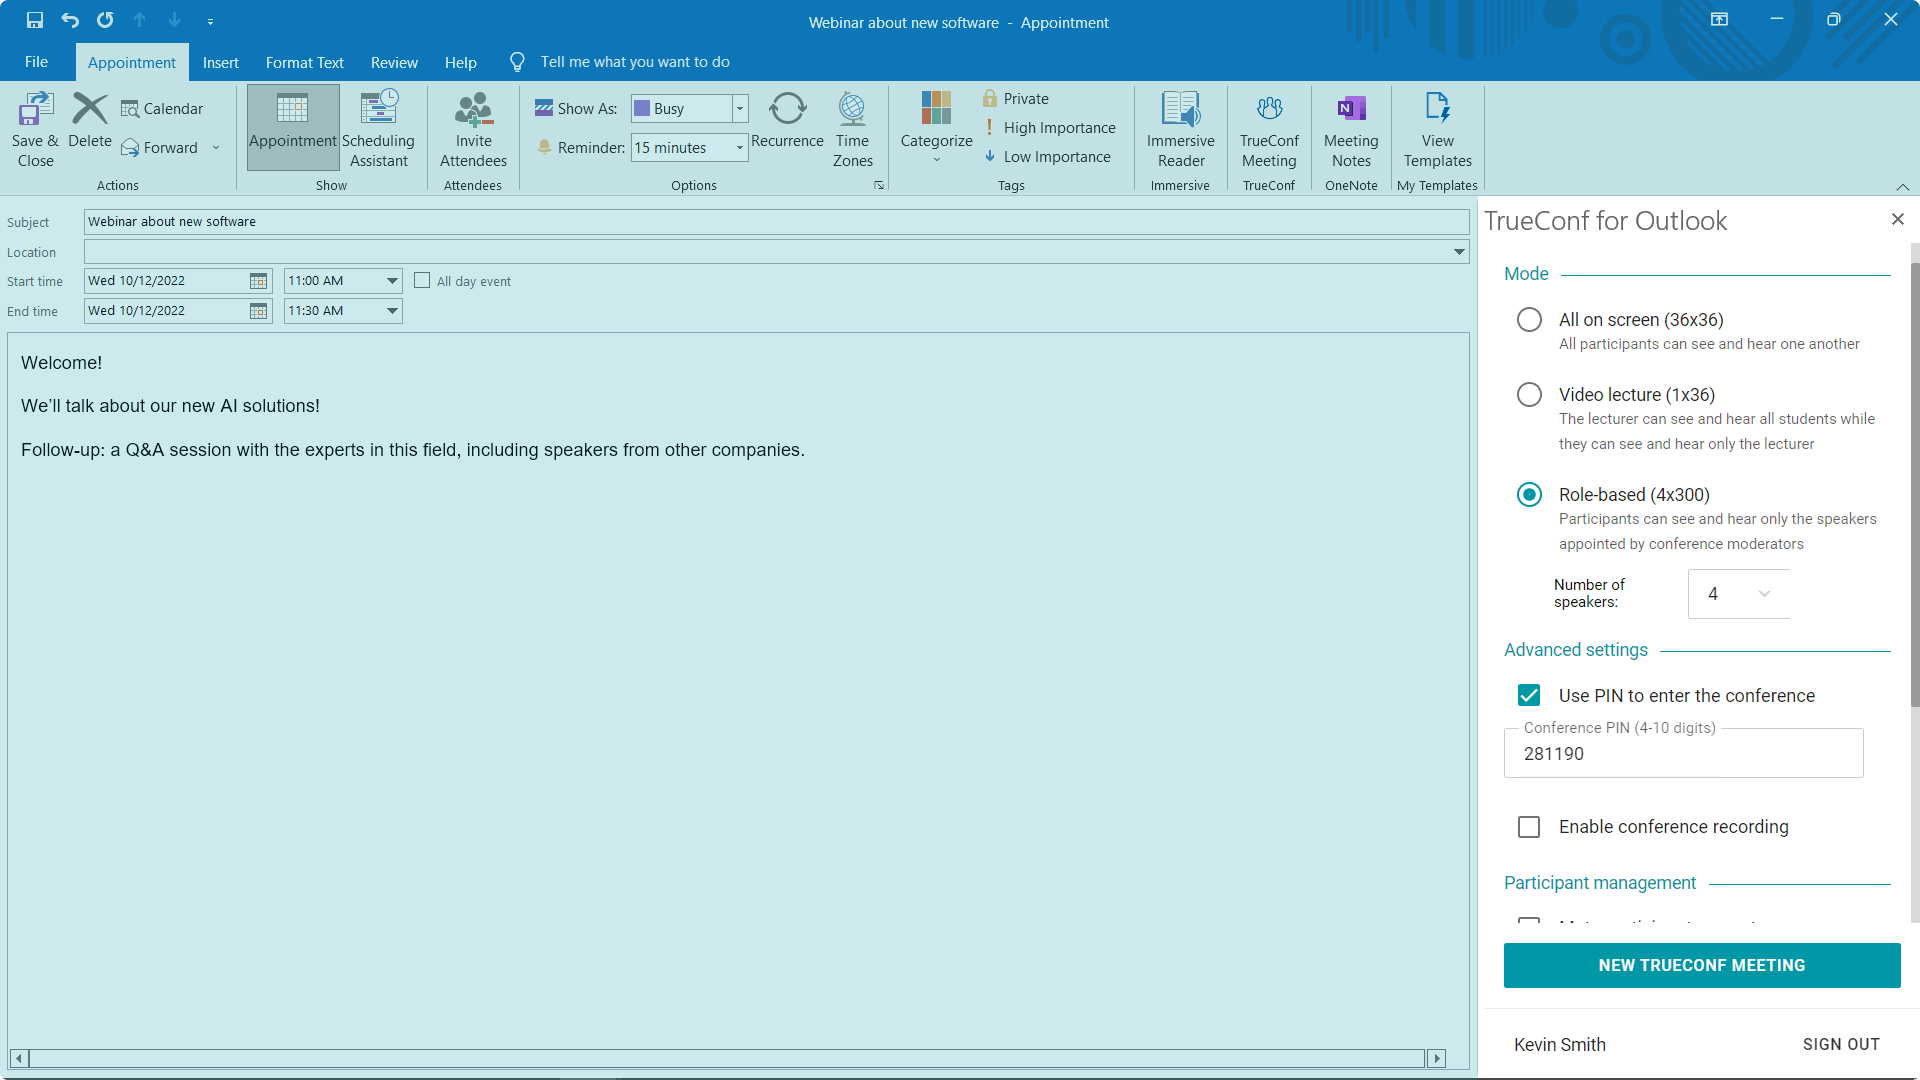 Integración de TrueConf y Microsoft Outlook 5